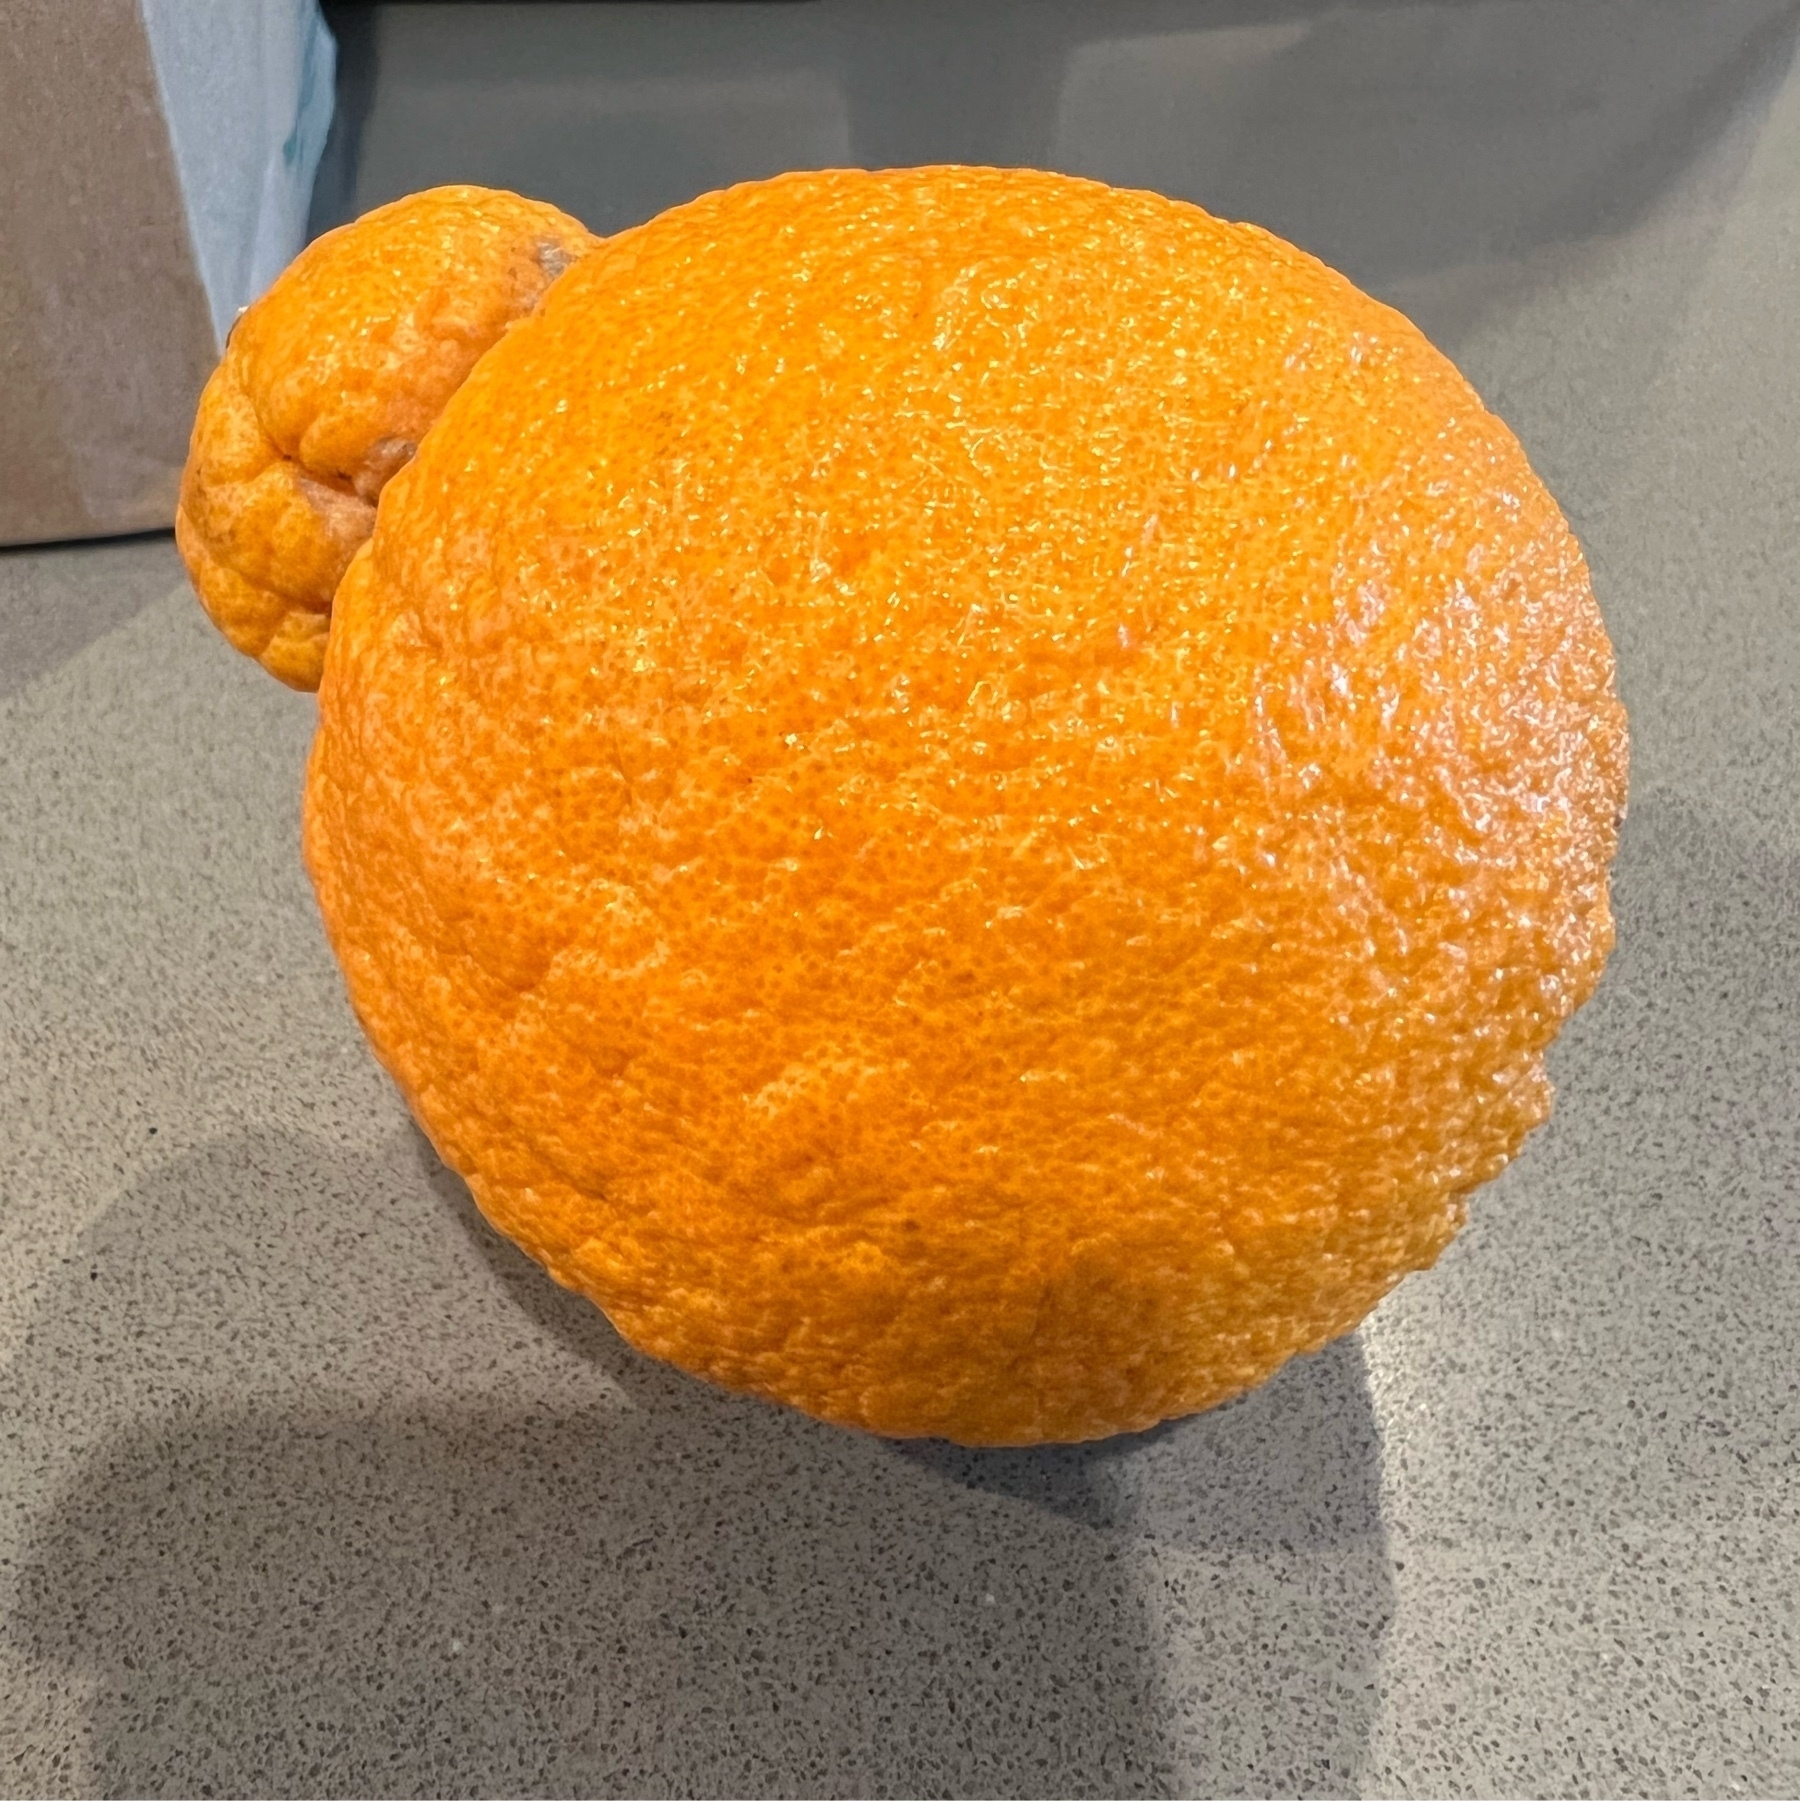 Sumo citrus on gray counter